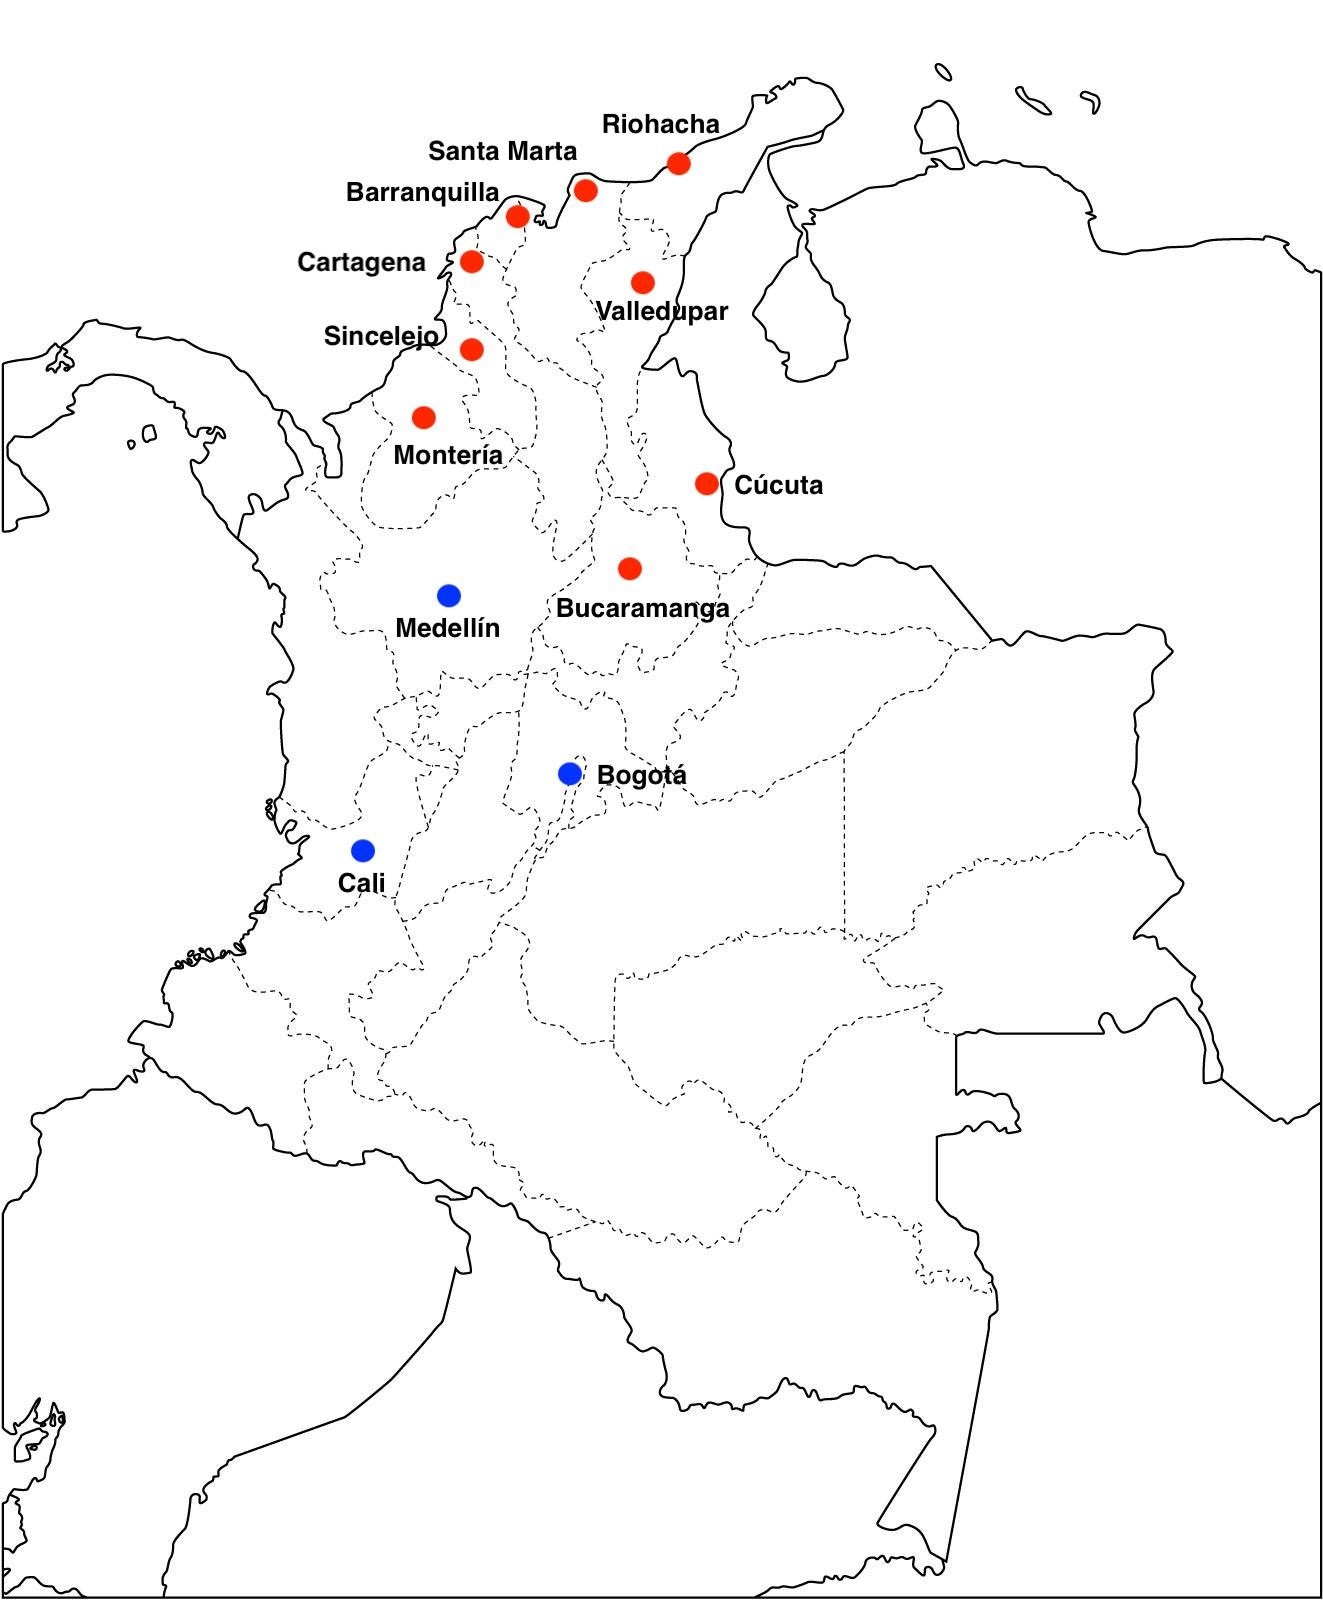 Ciudades y áreas metropolitnas usadas en el estudio